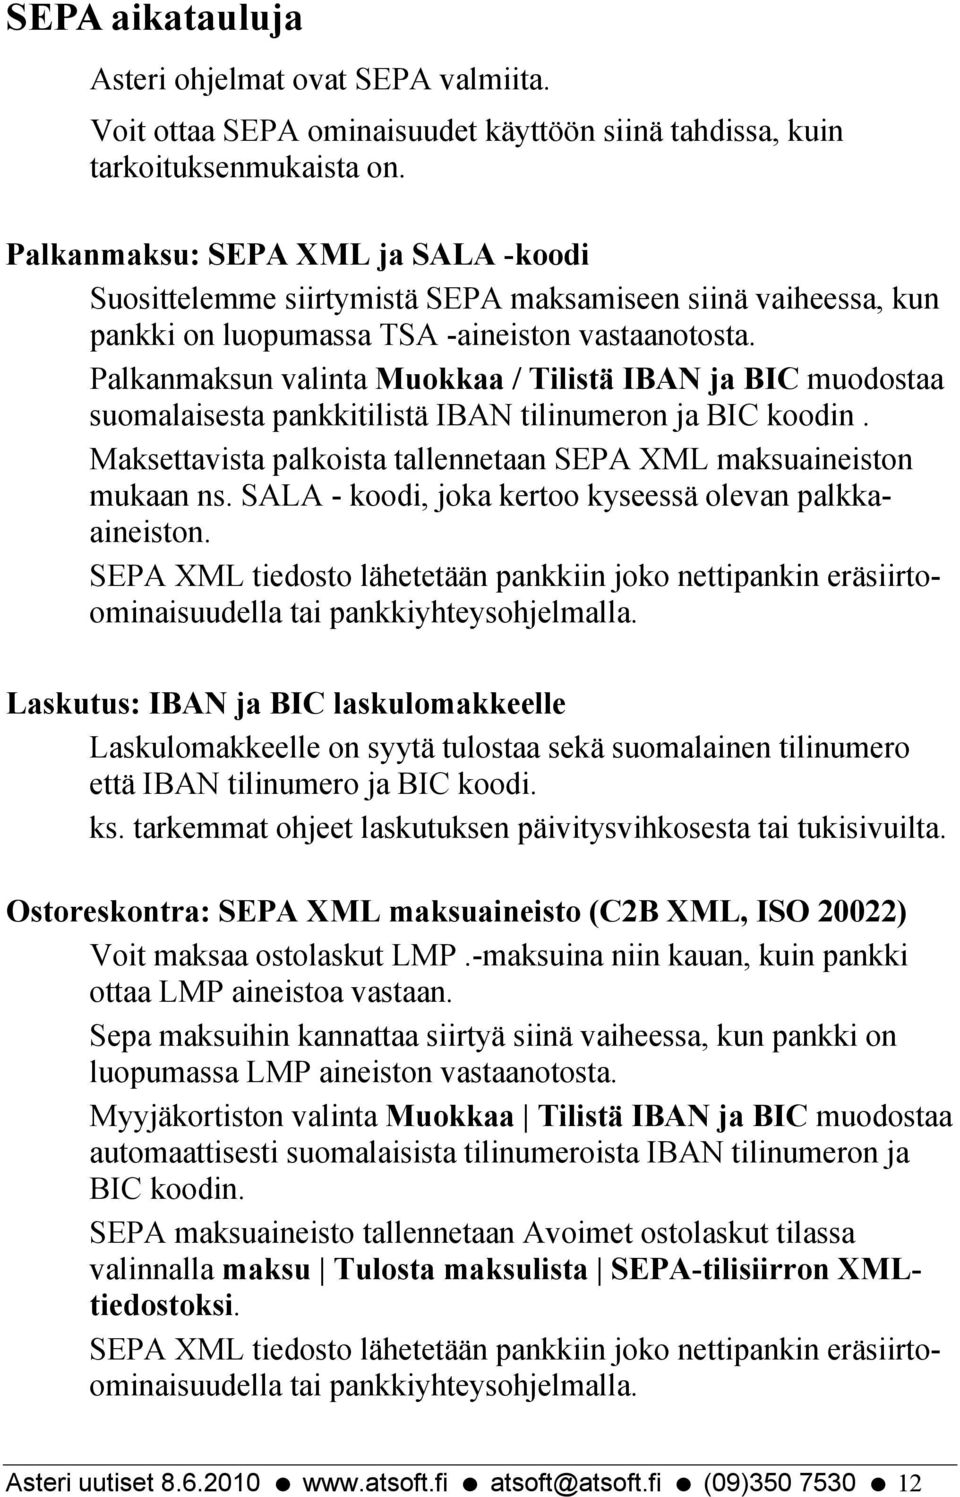 Palkanmaksun valinta Muokkaa / Tilistä IBAN ja BIC muodostaa suomalaisesta pankkitilistä IBAN tilinumeron ja BIC koodin. Maksettavista palkoista tallennetaan SEPA XML maksuaineiston mukaan ns.